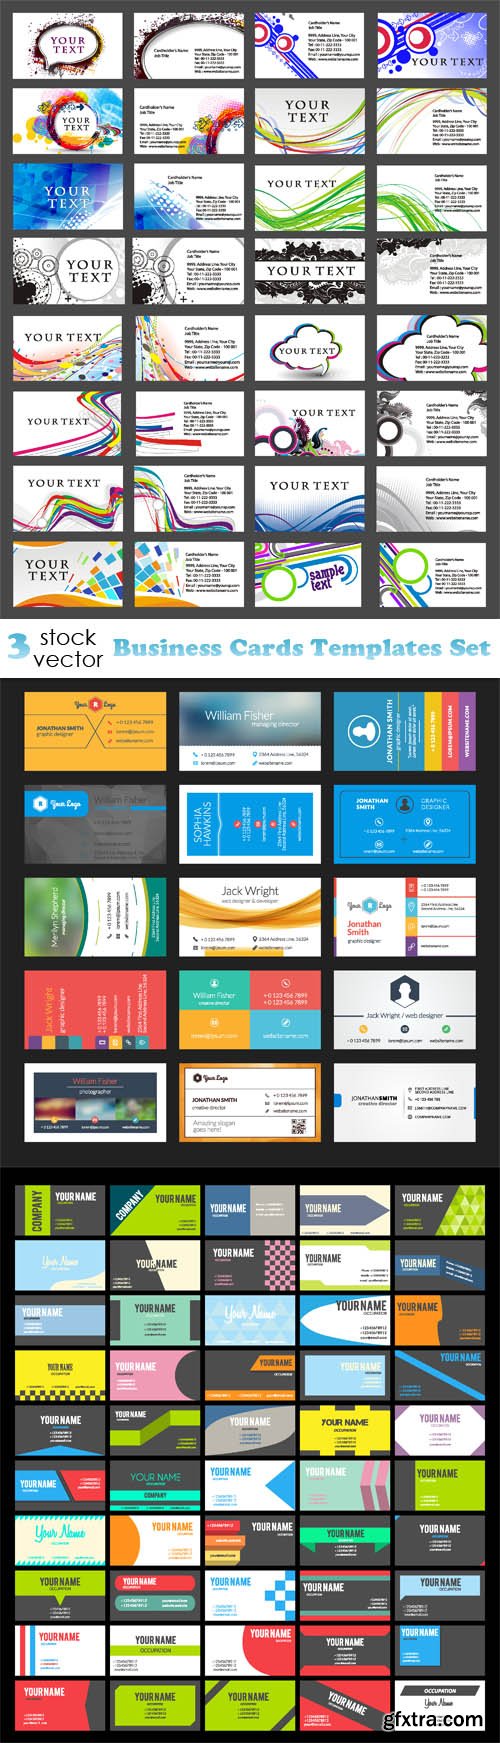 Vectors - Business Cards Templates Set